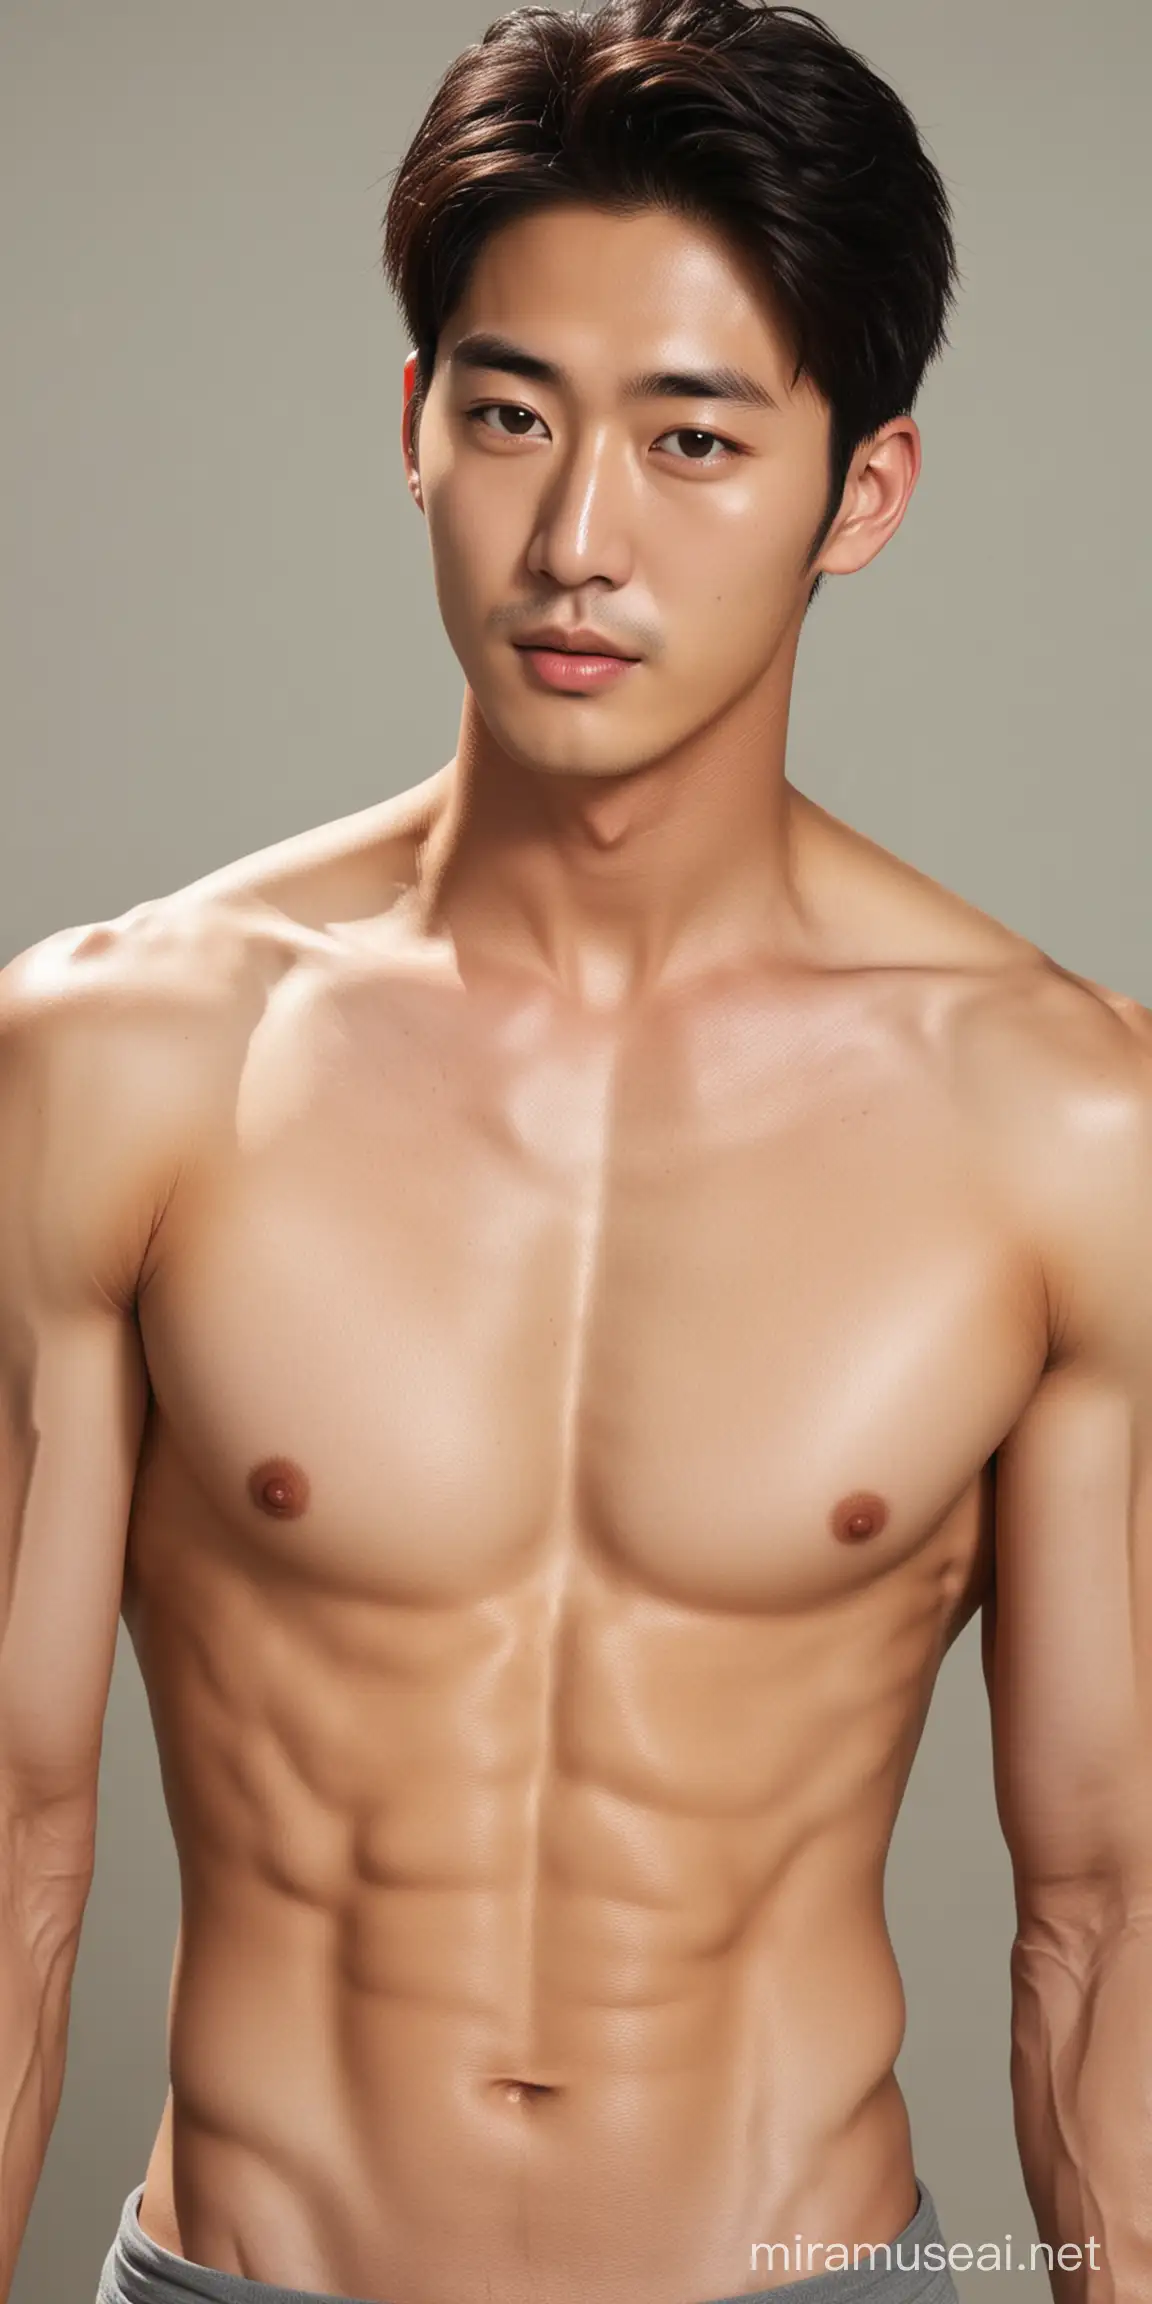 Beautiful Korean man, shirtless